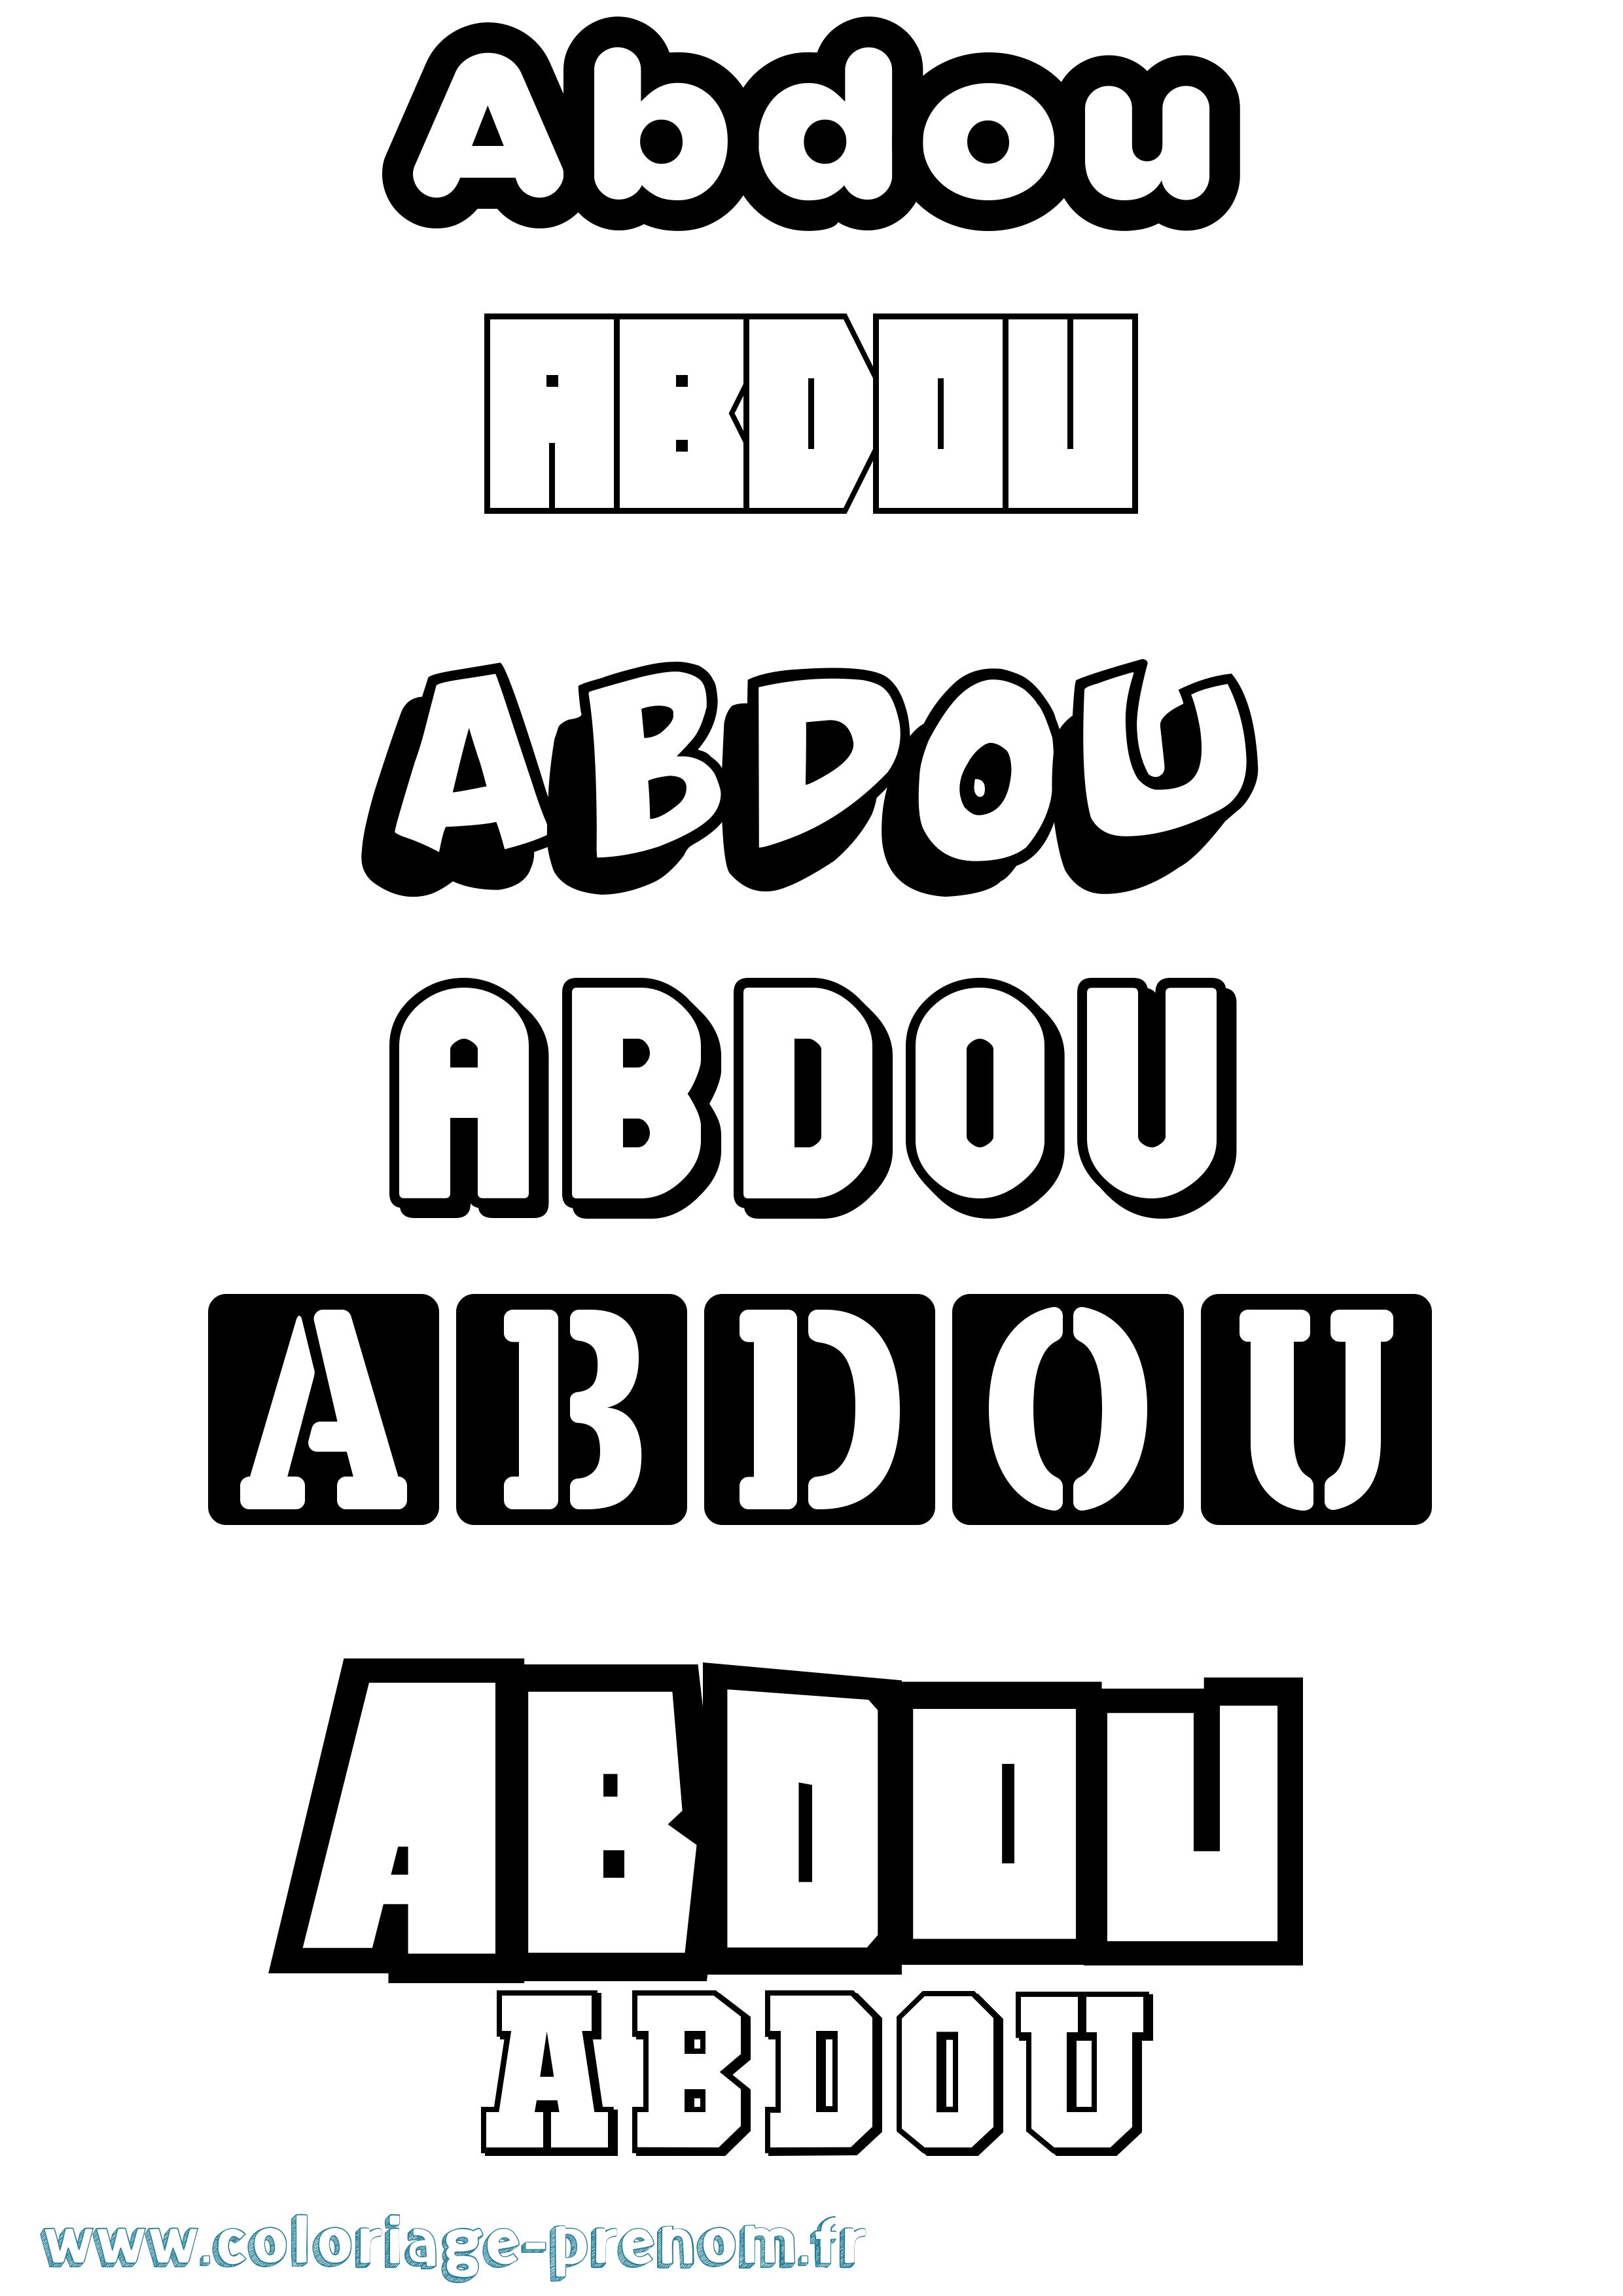 Coloriage prénom Abdou Simple